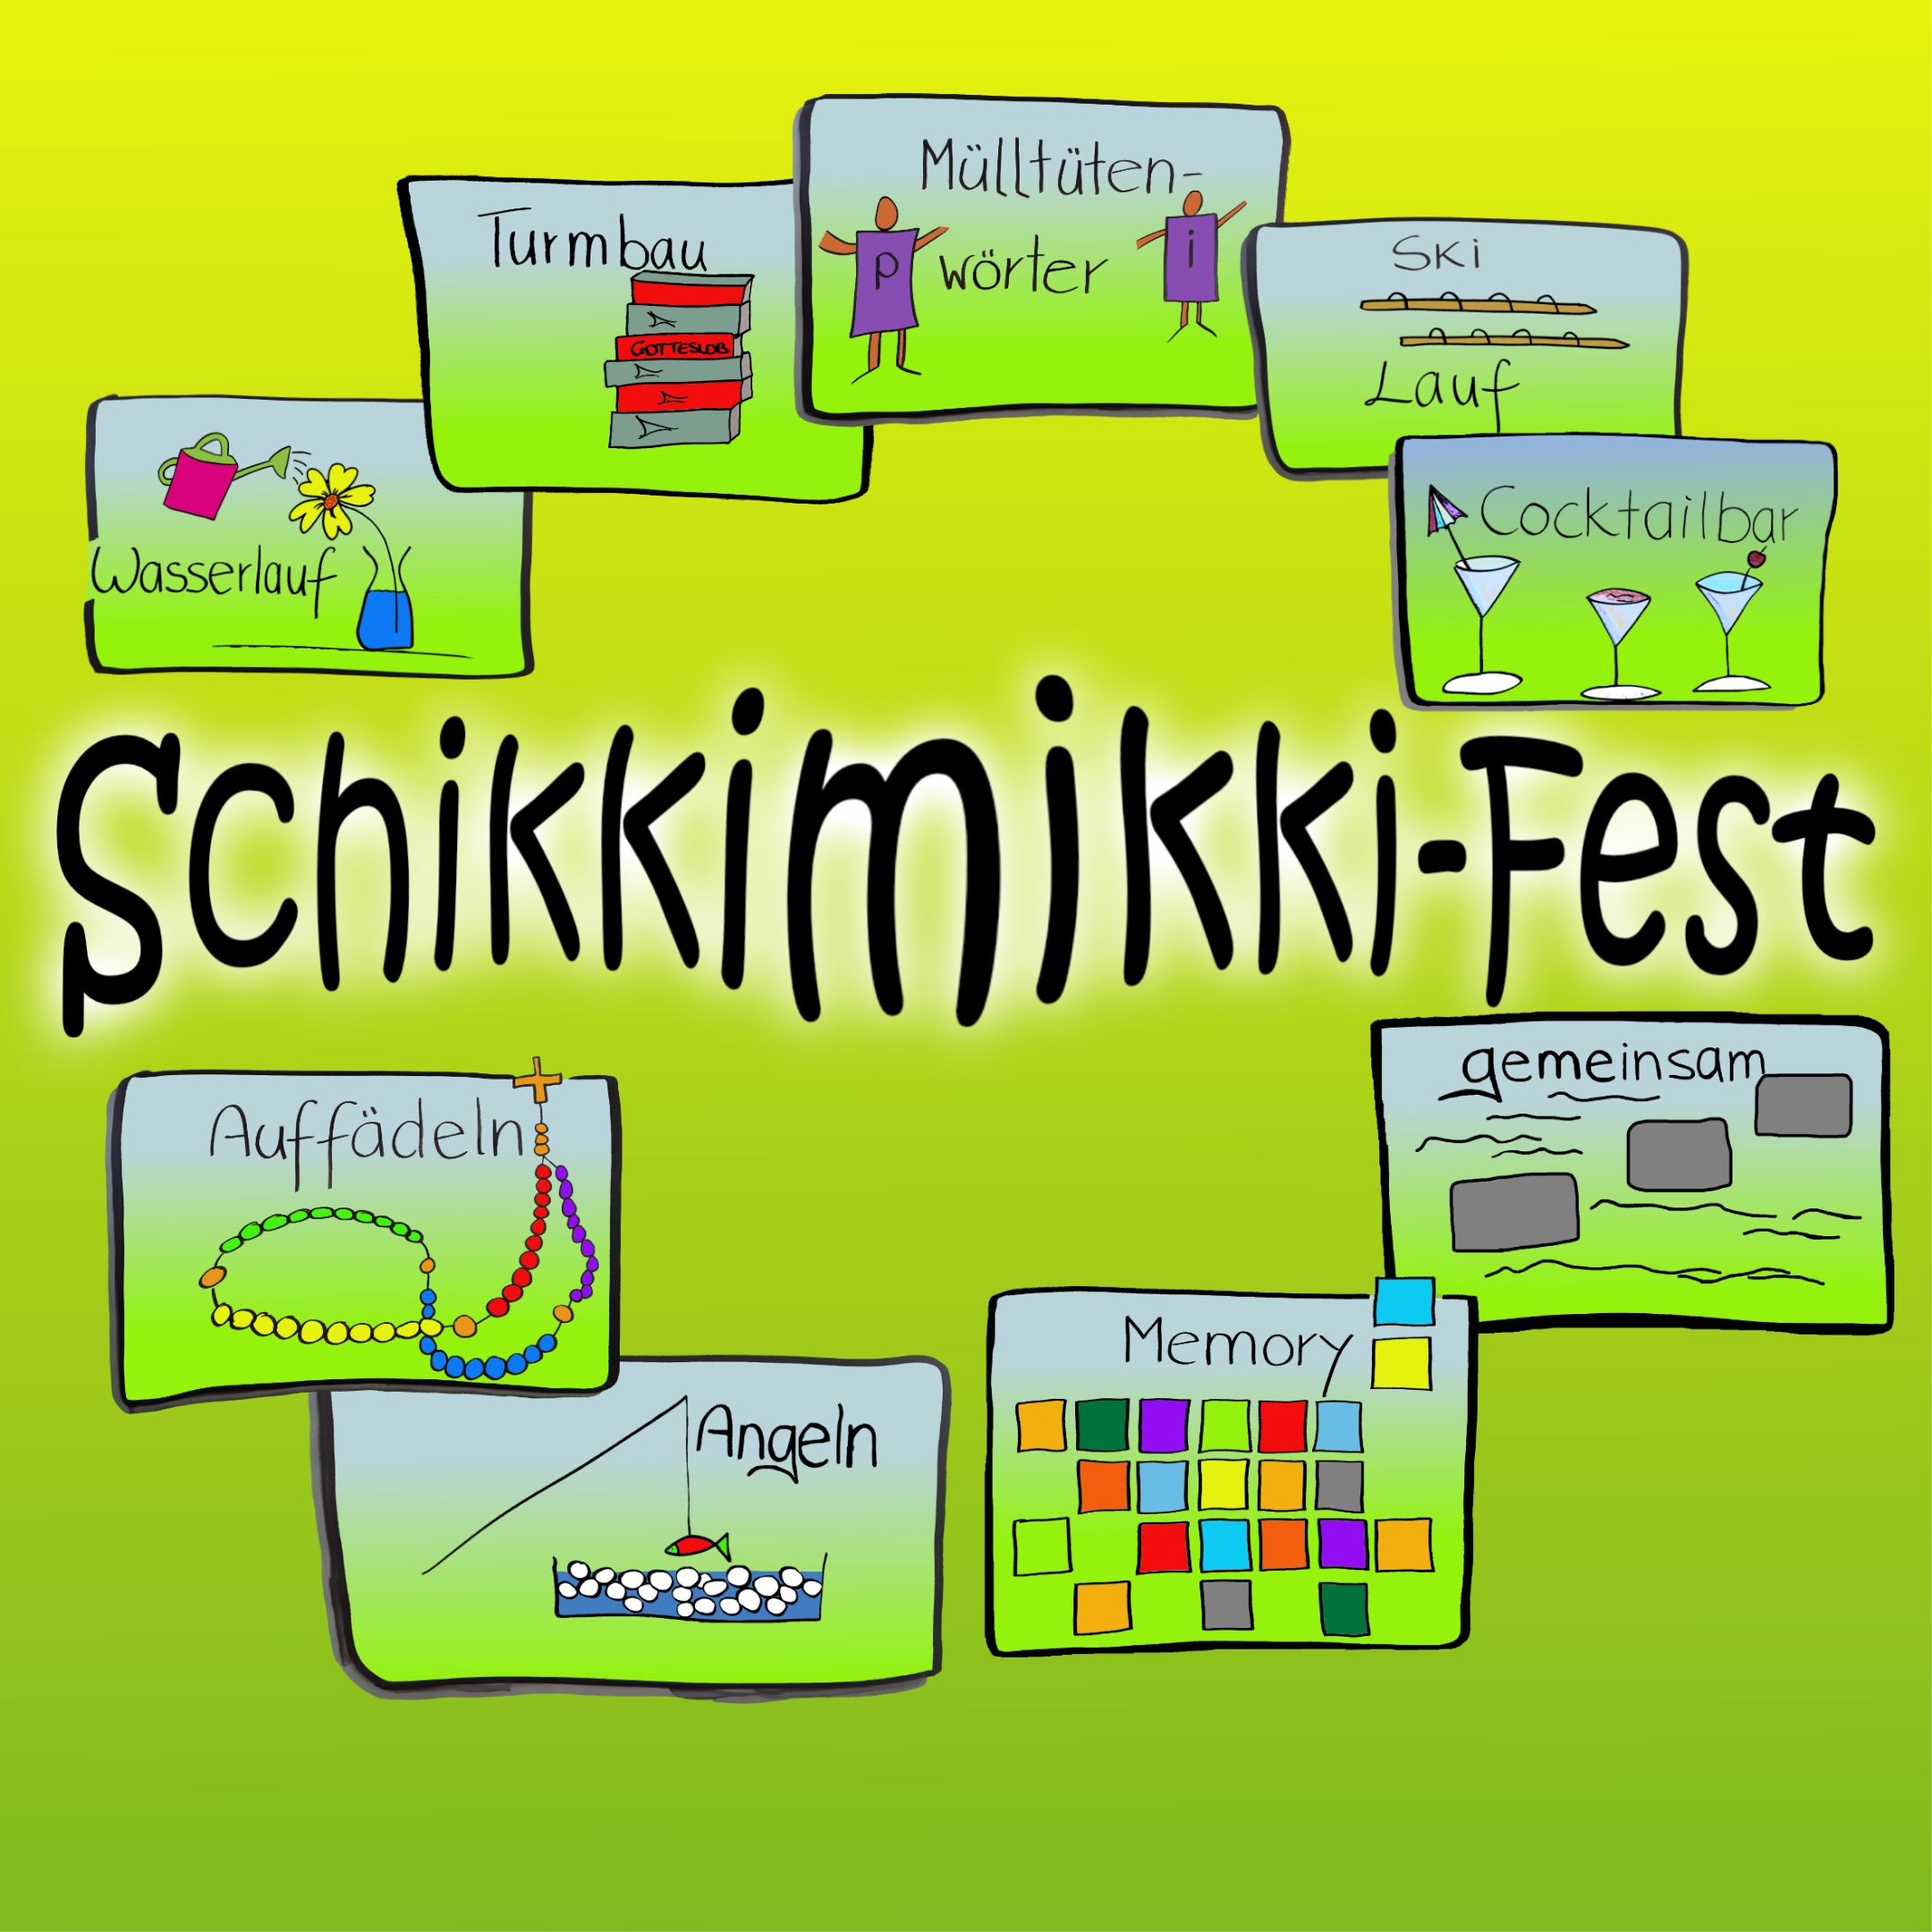 SSK-Treffen-Schikkimikki-Fest-01